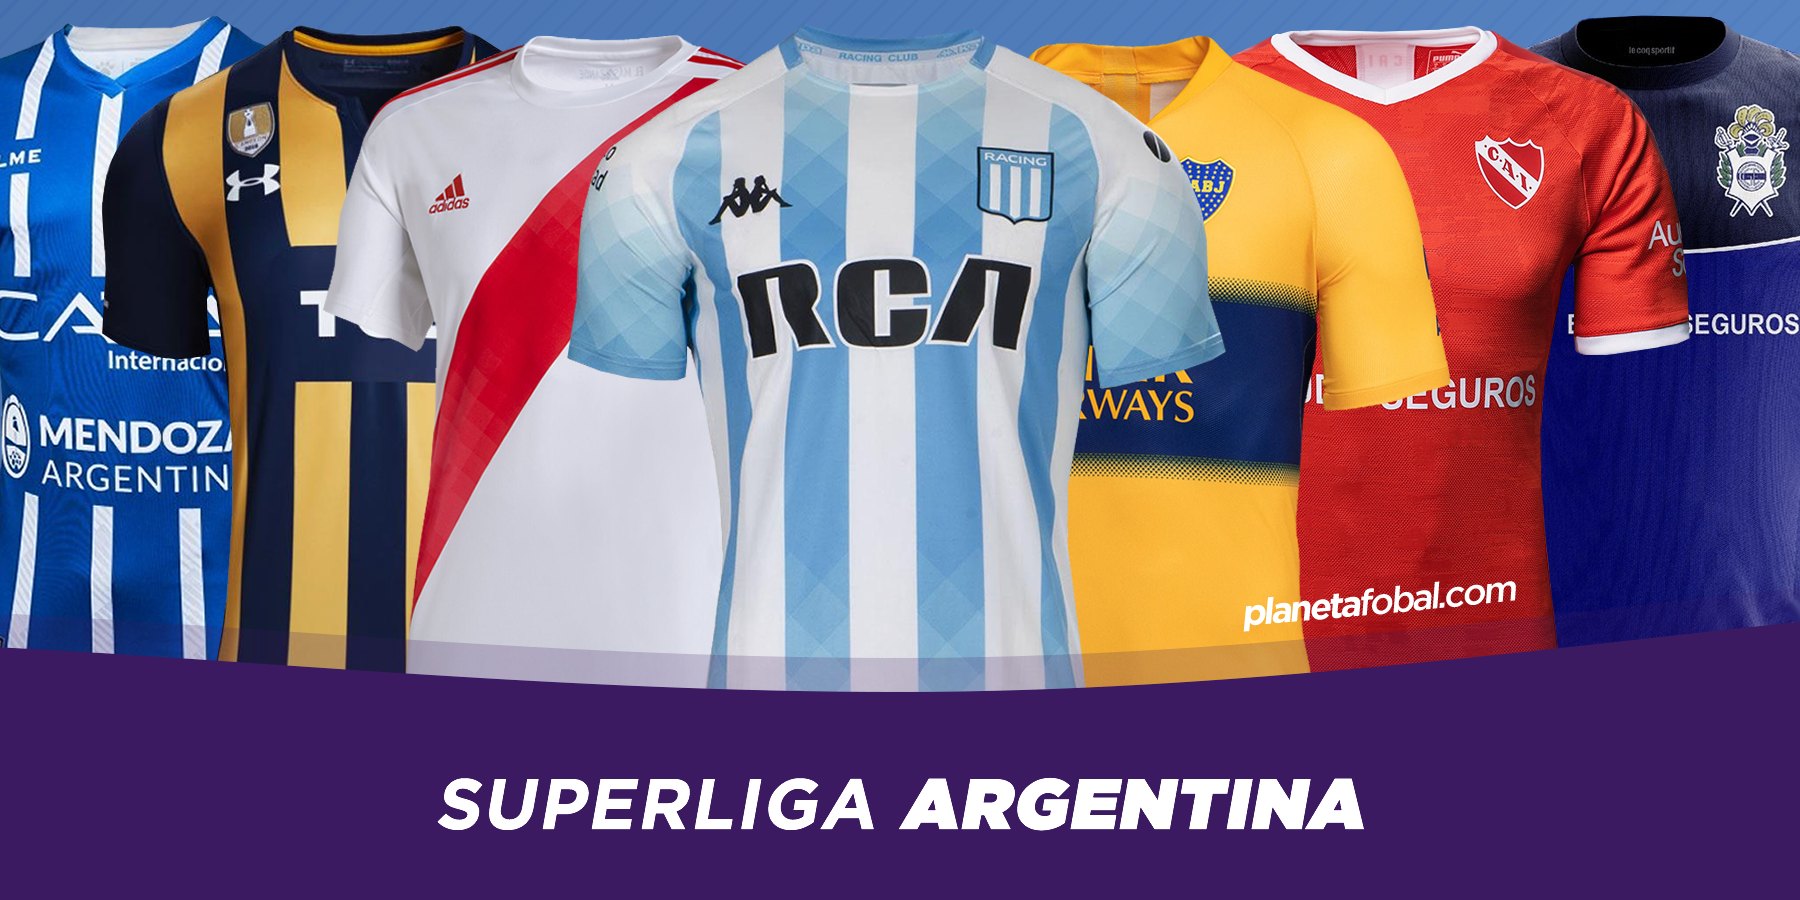 Camisetas de la Superliga Argentina 2019/20